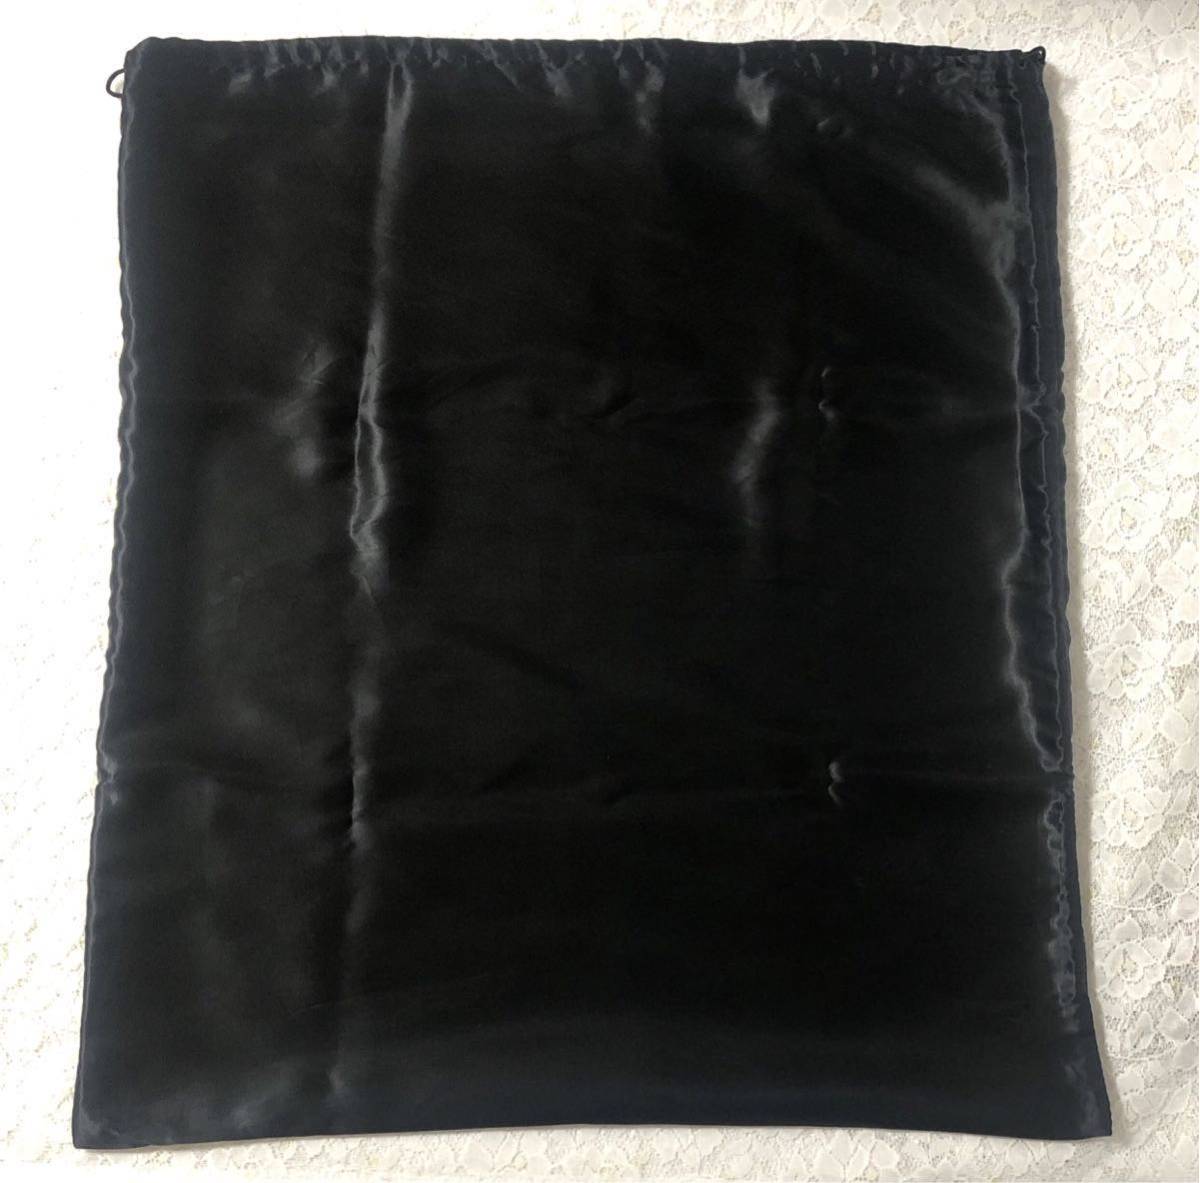 イヴサンローラン「YVE SAINT LAURENT」バッグ保存袋 旧型 (2786) 正規品 付属品 布袋 巾着袋 ブラック 二重仕立て ナイロン生地 わけあり_画像2